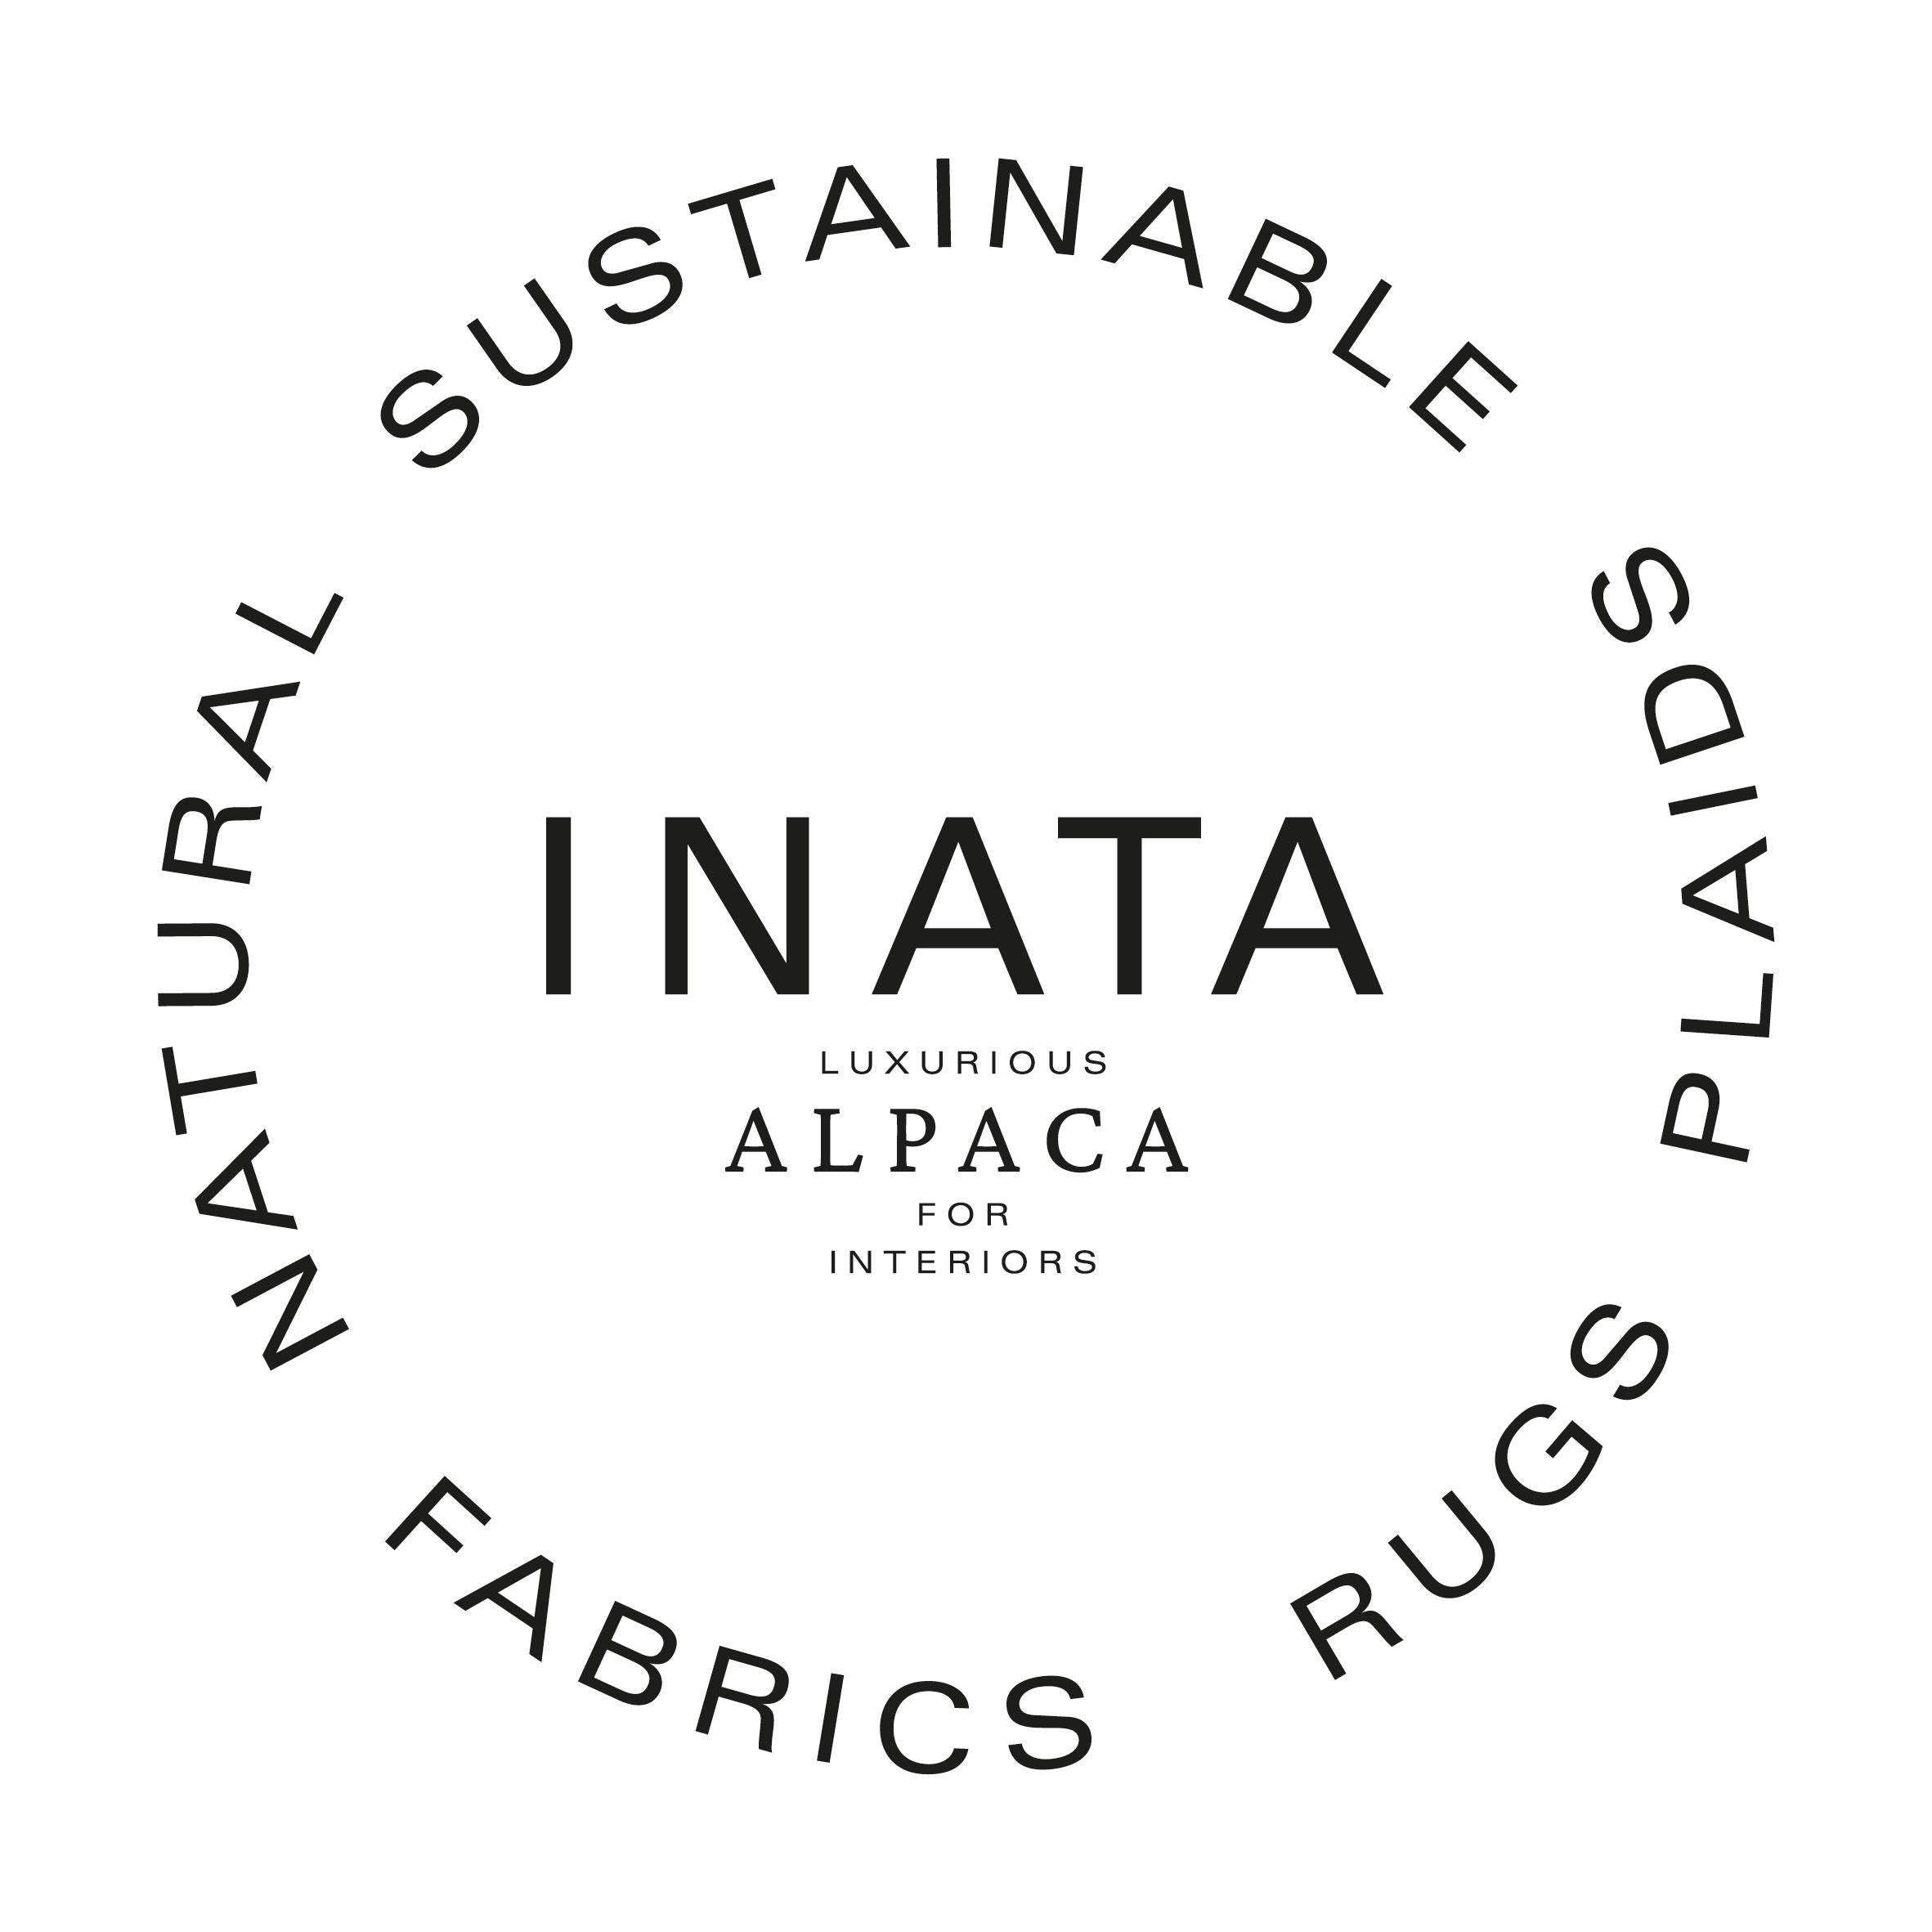 Wir setzen neue Maßstäbe für nachhaltige Luxustextilien für die Inneneinrichtung, bewahren das Erbe der Alpaka-Bauern und stärken sie. Jeder Produktionsschritt wird von Inata kontrolliert, um zu gewährleisten, dass die Produkte mit größtem Respekt